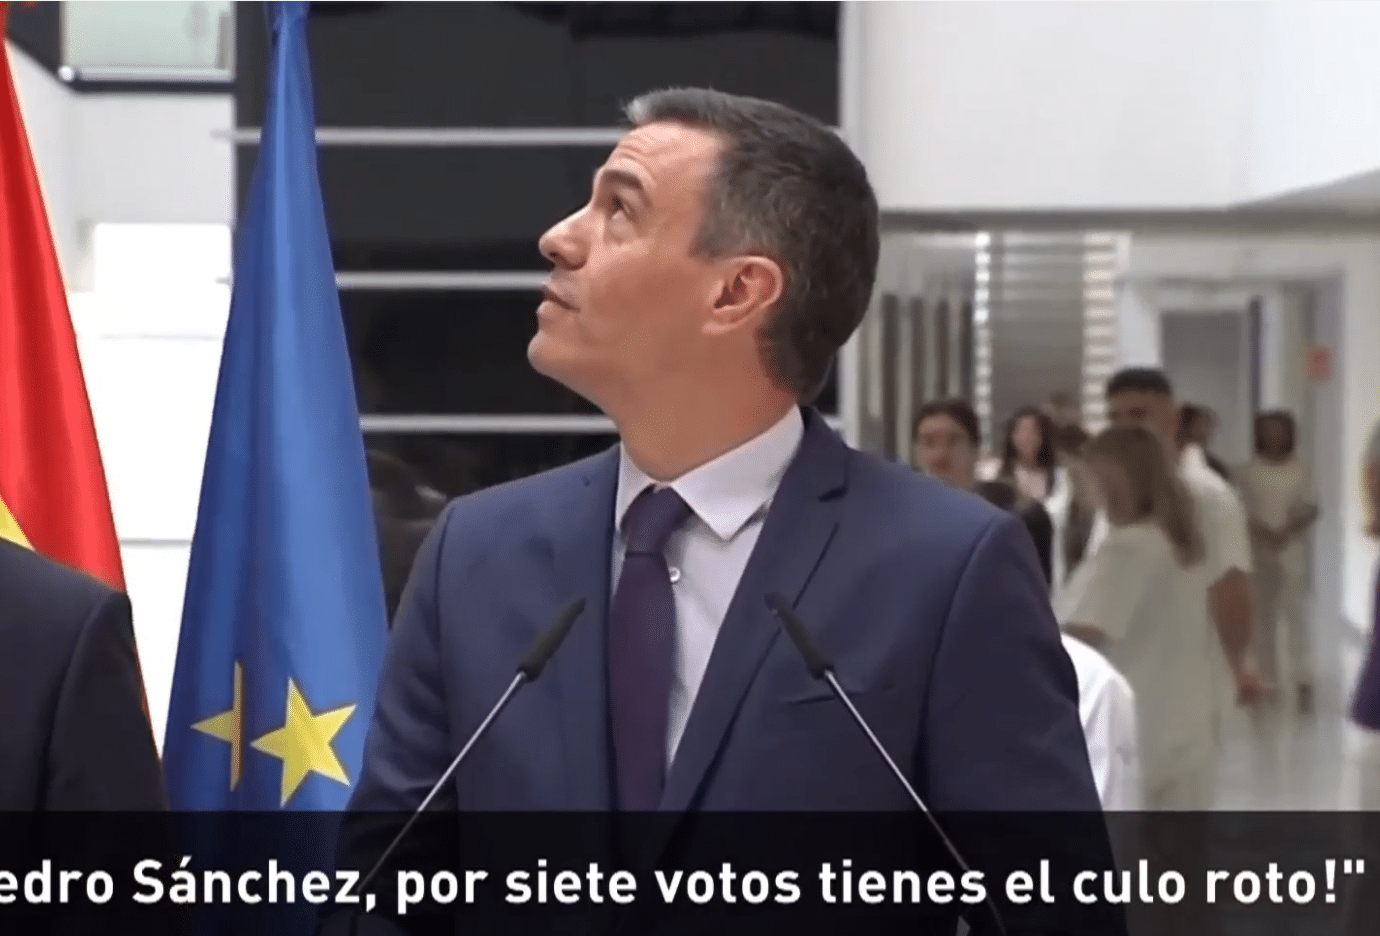 Desde Oviedo hasta Sevilla, los españoles le echan en cara a Sánchez sus pactos con el independentismo: “¡Tienes el culo roto por siete votos!”